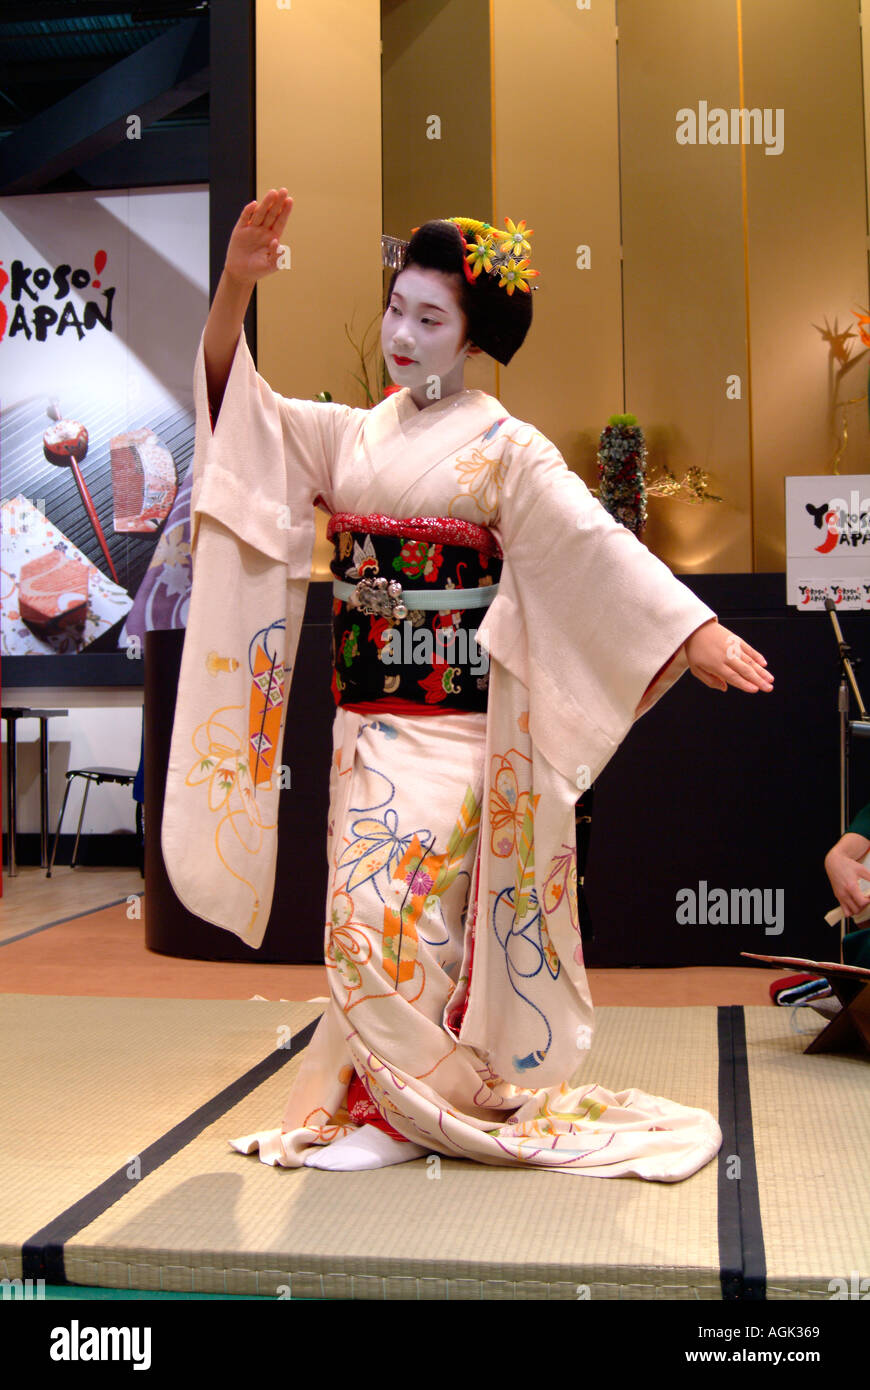 Toshihana Maiko de Kyoto, de l'exécution sur le stand du Japon au World Travel Market 2004 London Docklands Excel Banque D'Images